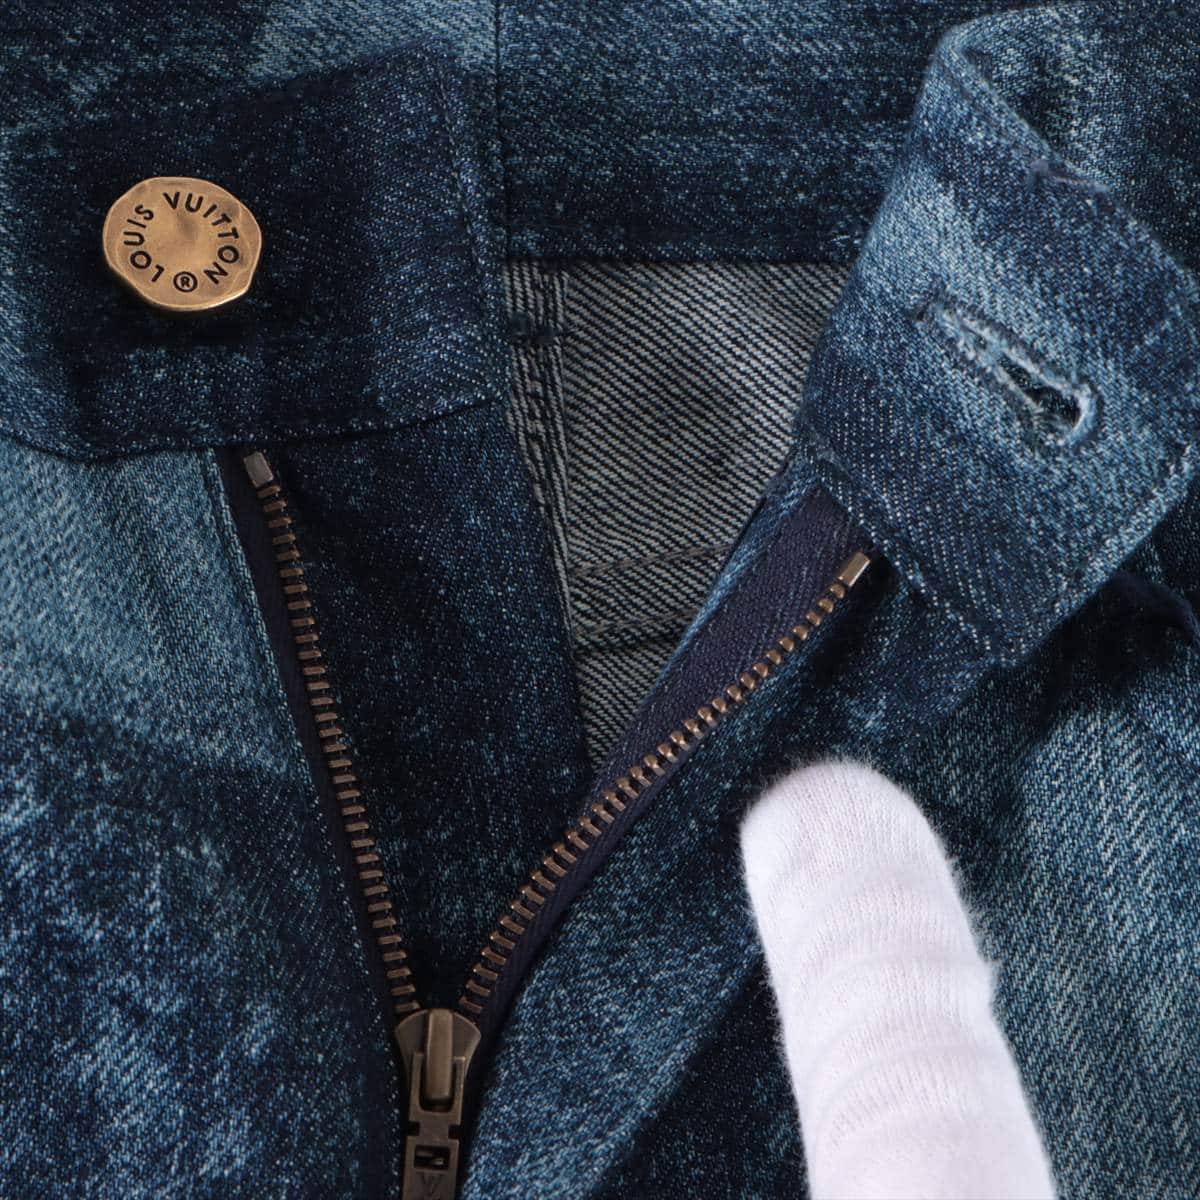 Louis Vuitton 21AW Cotton Denim pants 29 Men's Blue indigo  RM212M  Virgil Abloh